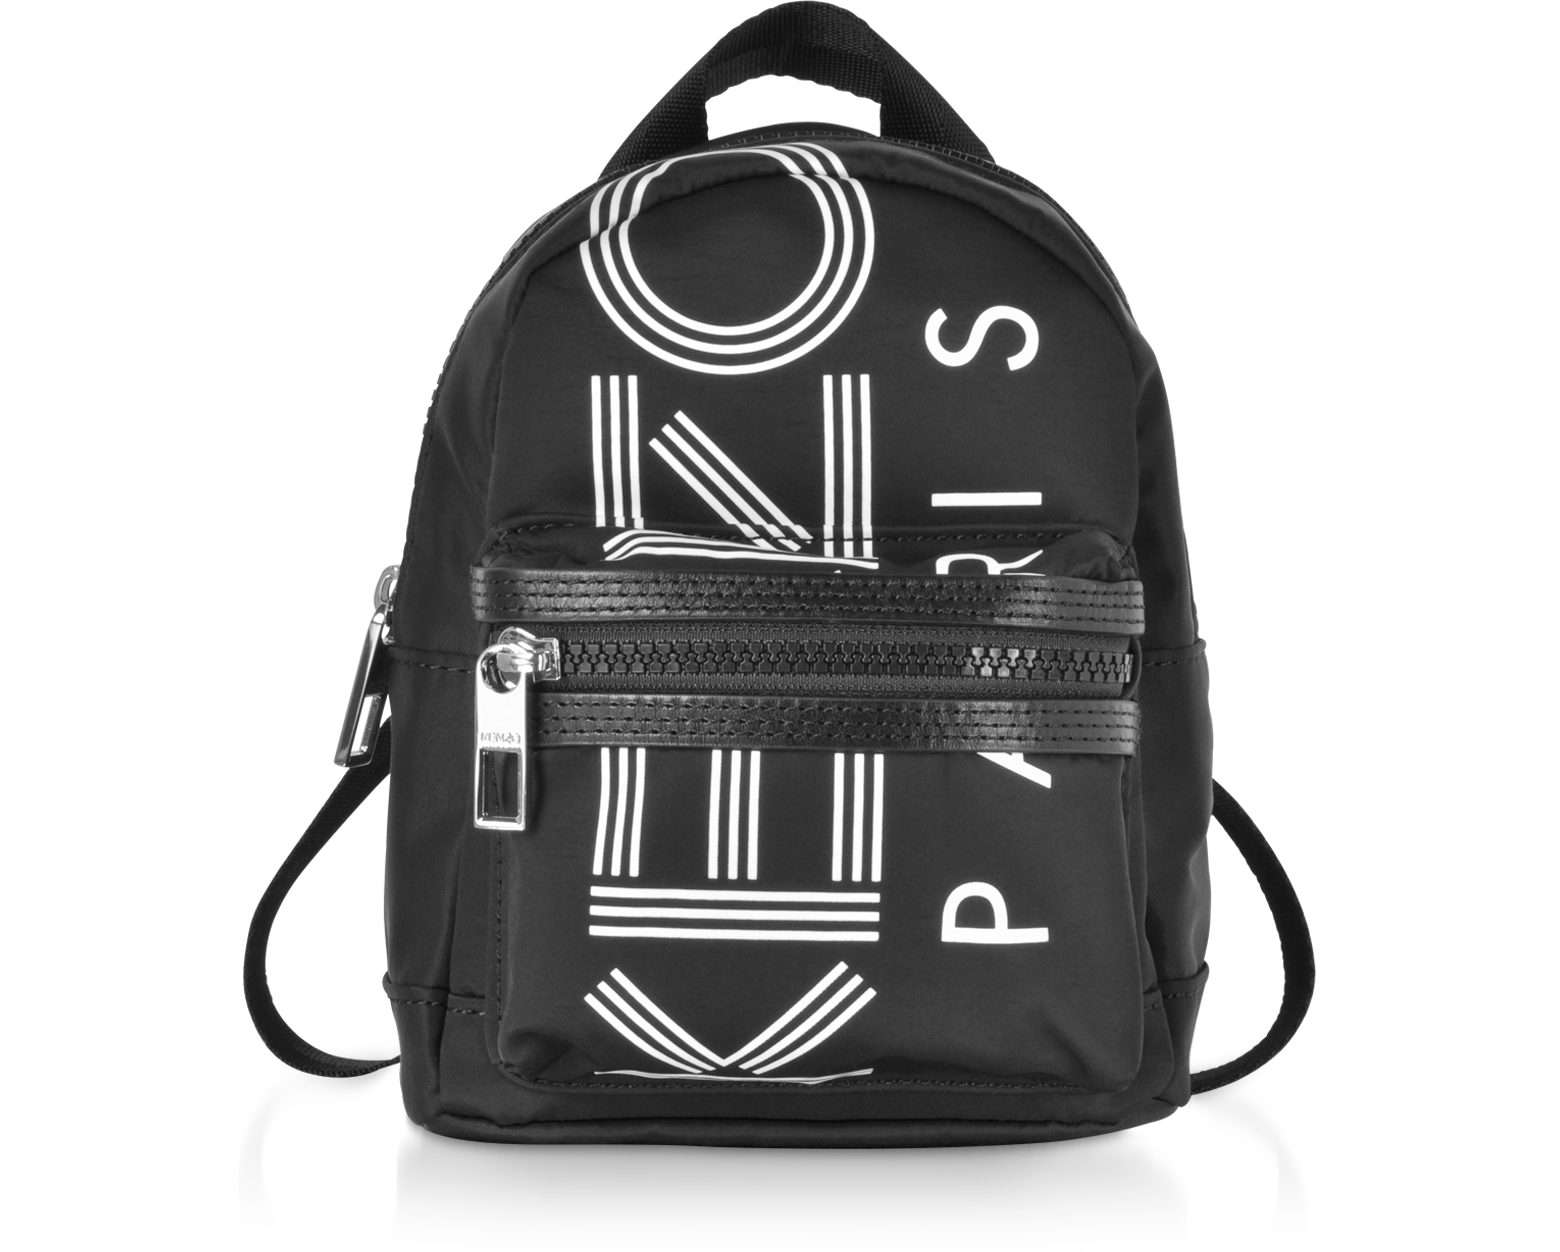 kenzo backpack mini